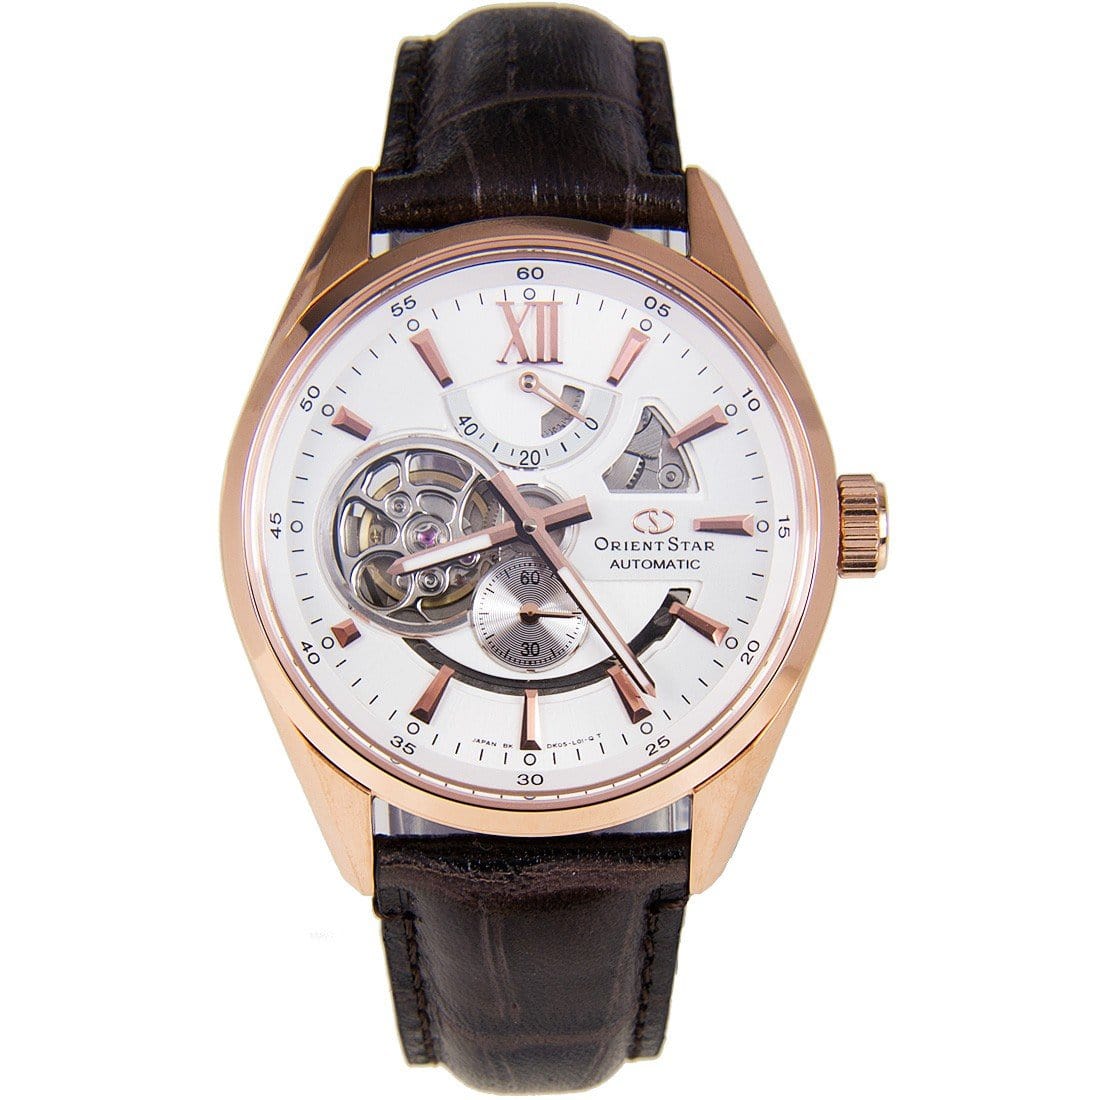 Orient Star Japan Automatic Watch SDK05003W0 DK05003W